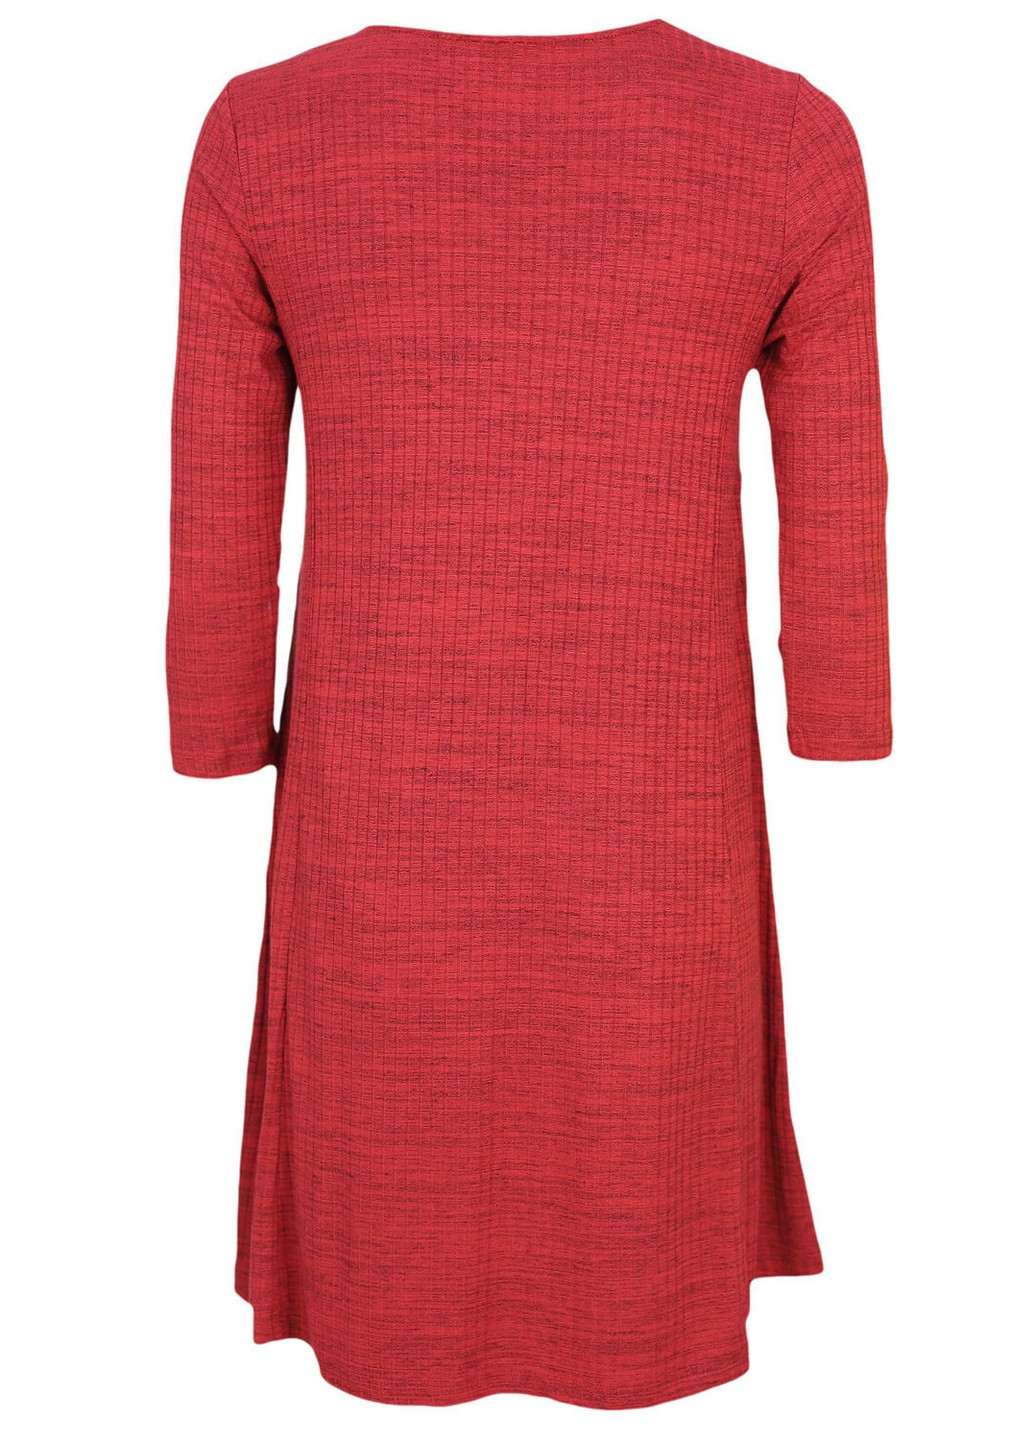 Червона сукня Stradivarius меланжева